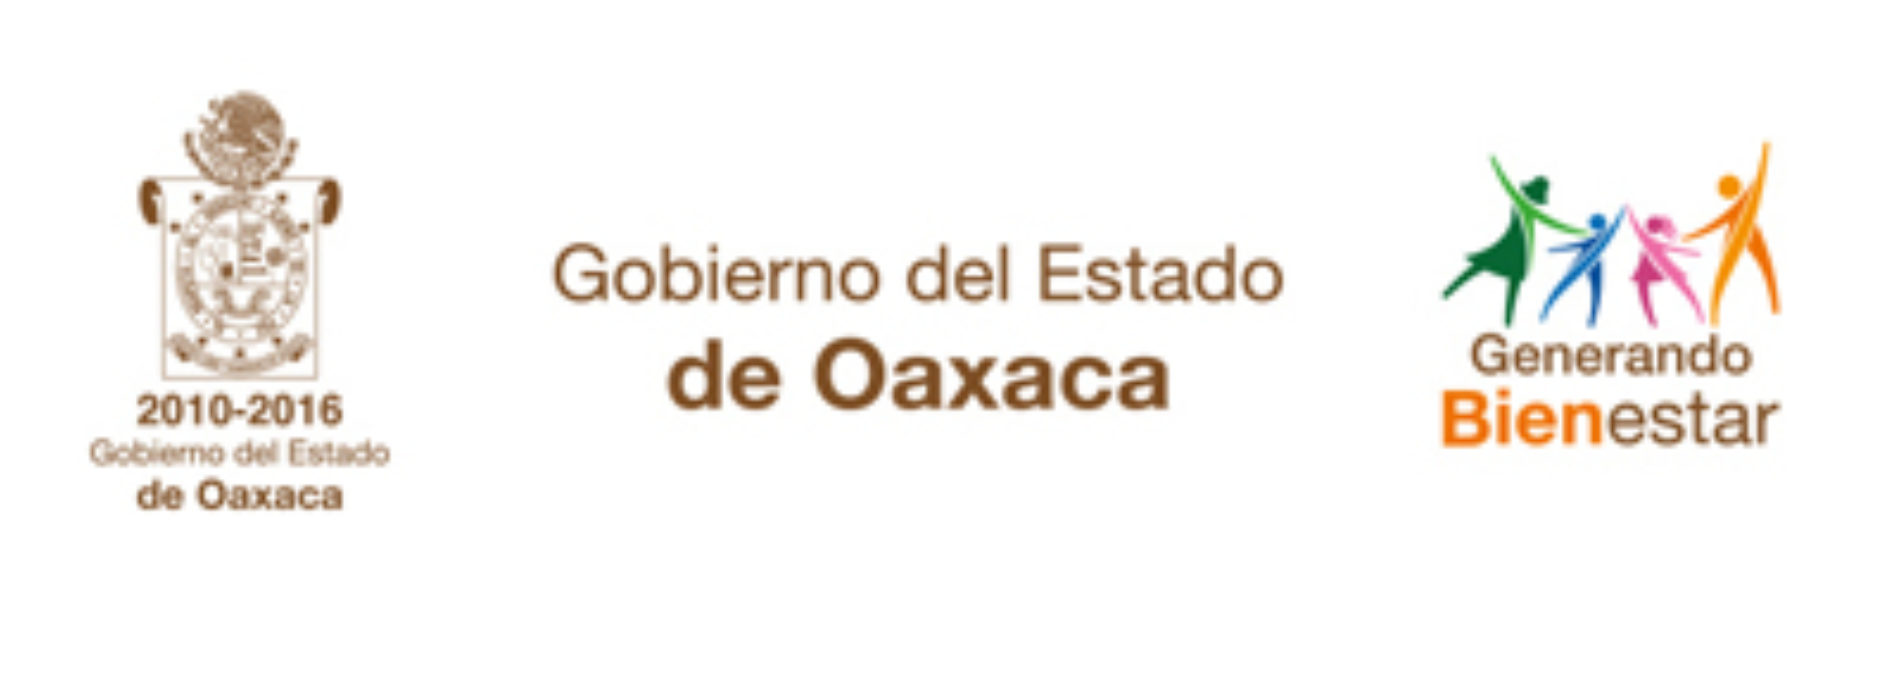 Cuenta Pública y Presupuesto Ciudadano, ejemplo de transparencia financiera en Oaxaca: Arnaud Viñas